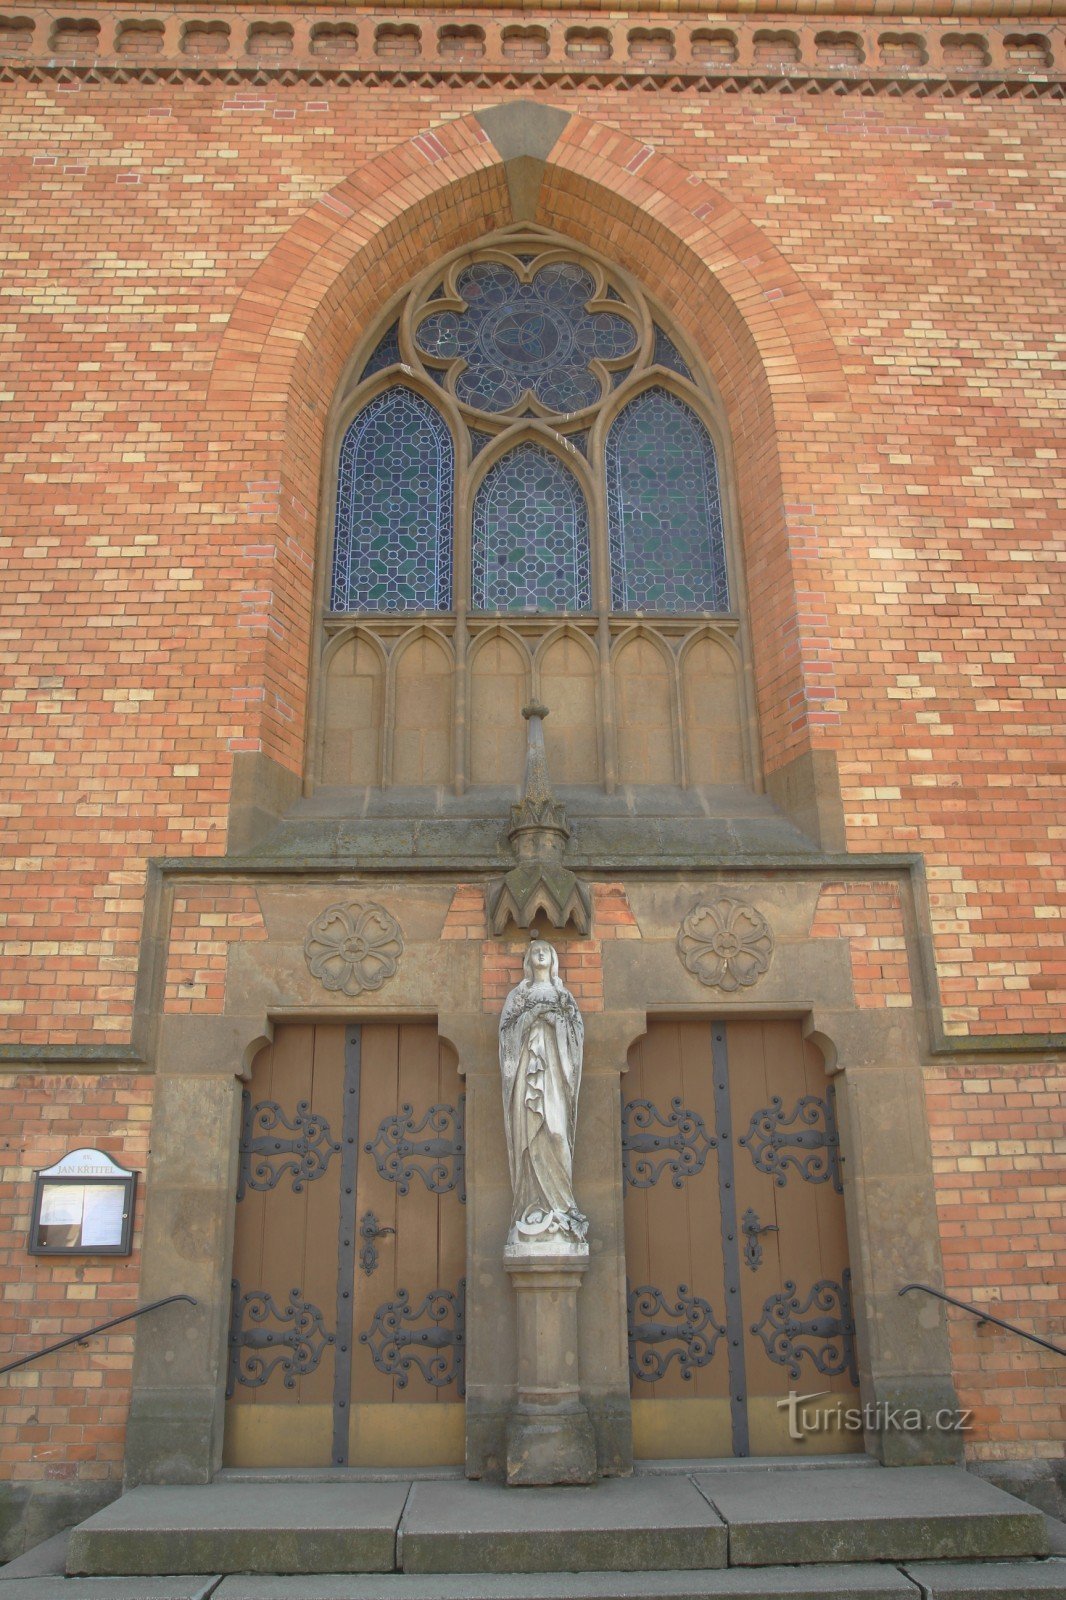 Particolare dell'ingresso principale della chiesa